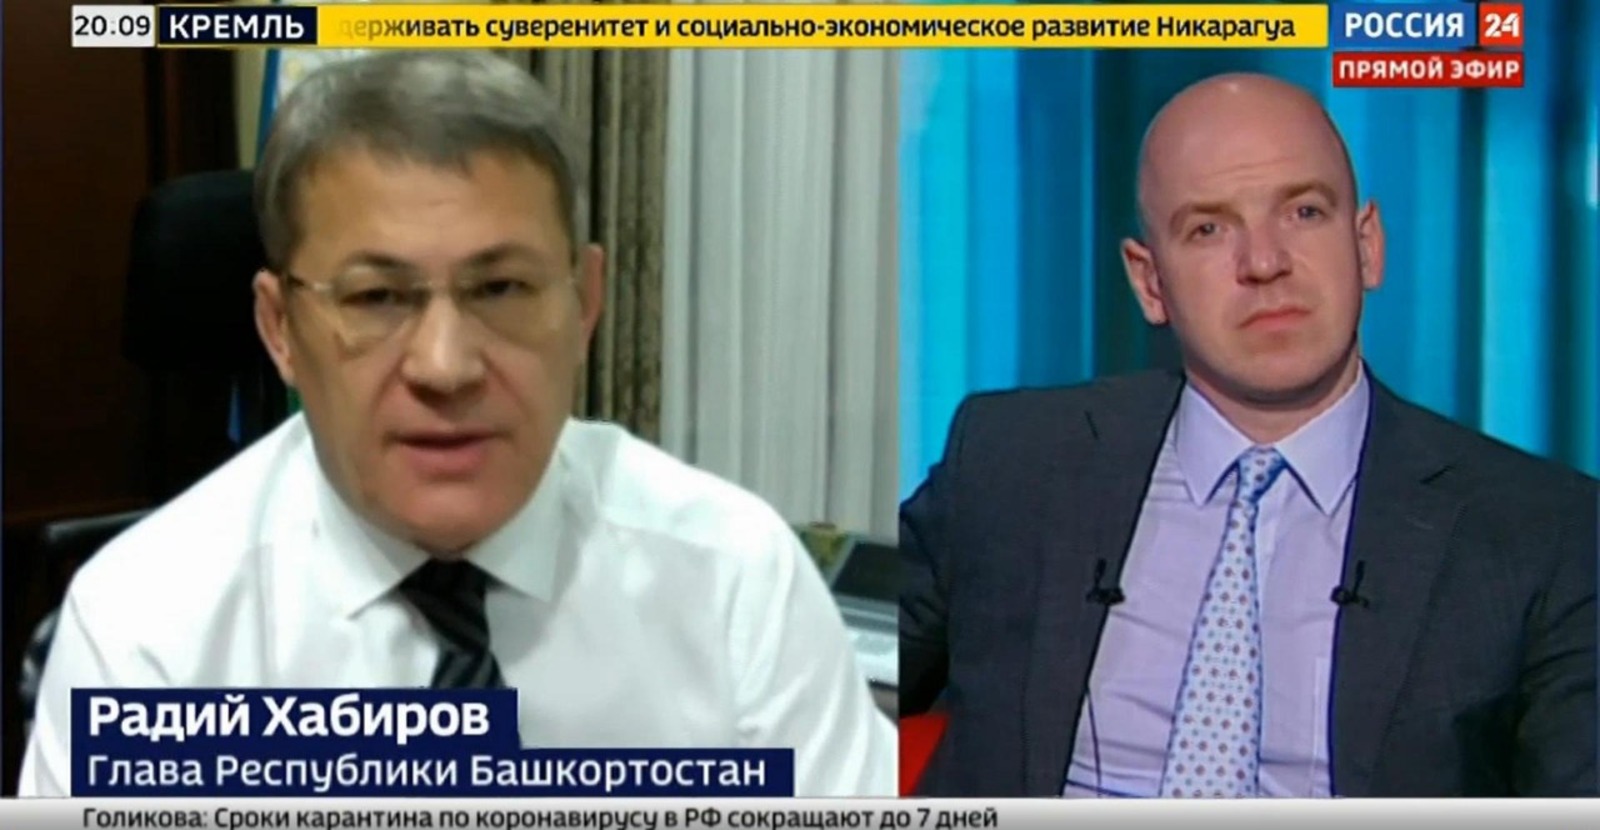 Радий Хабиров в интервью телеканалу рассказал, как Башкирия достигла 91% вакцинации